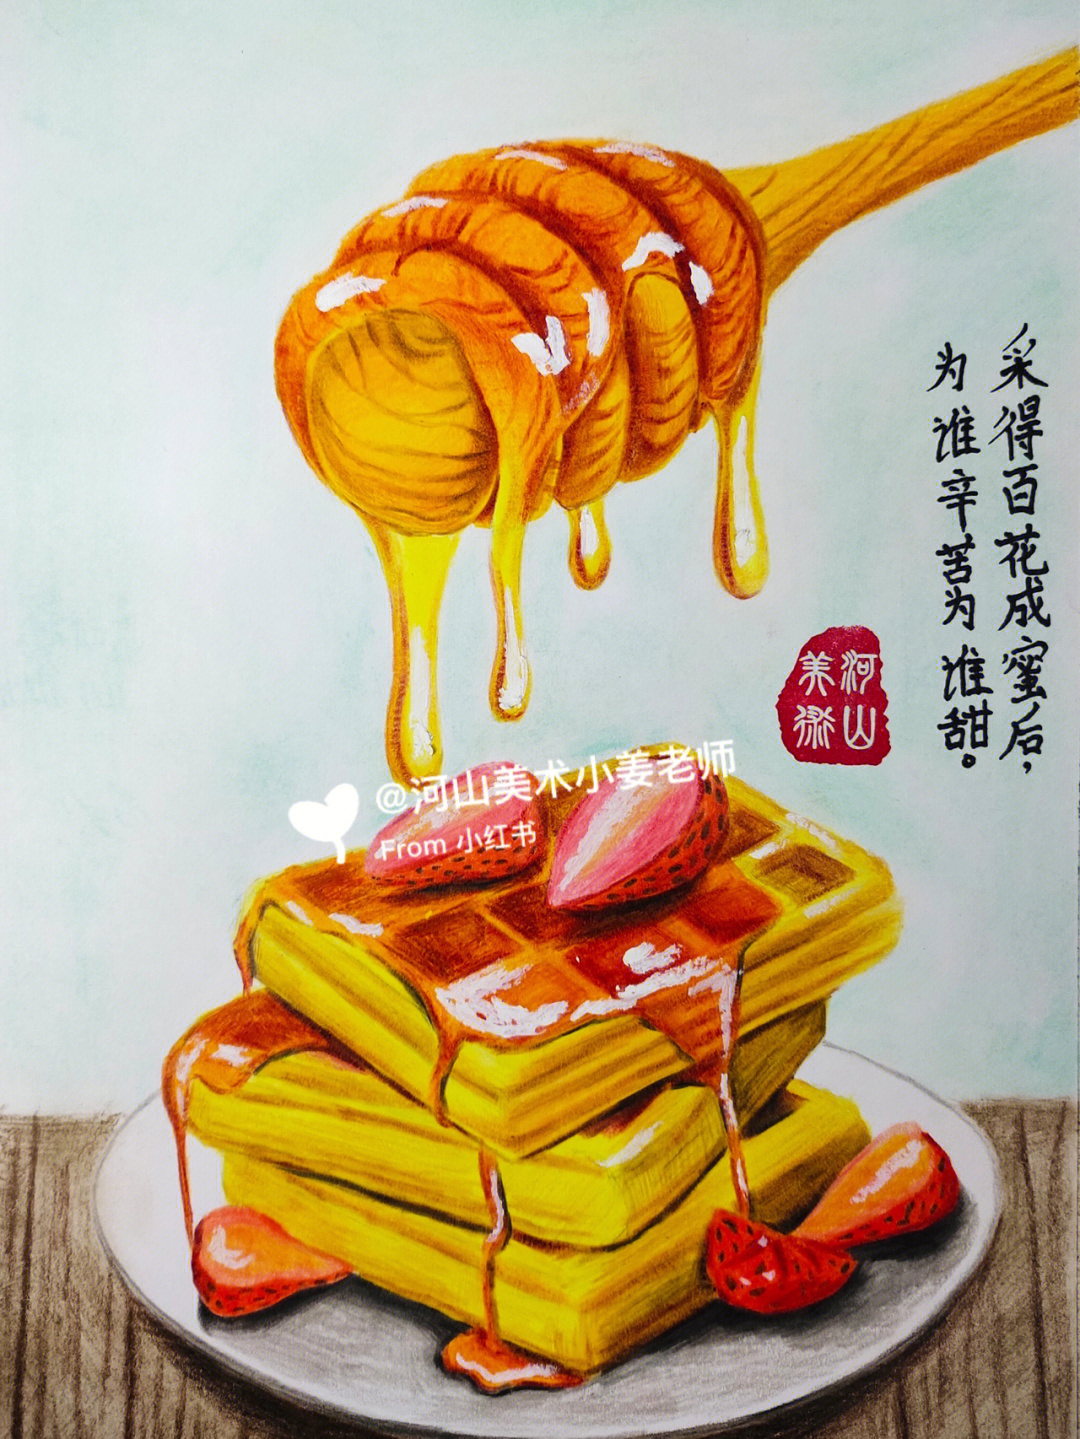 彩铅蜂蜜77华夫饼